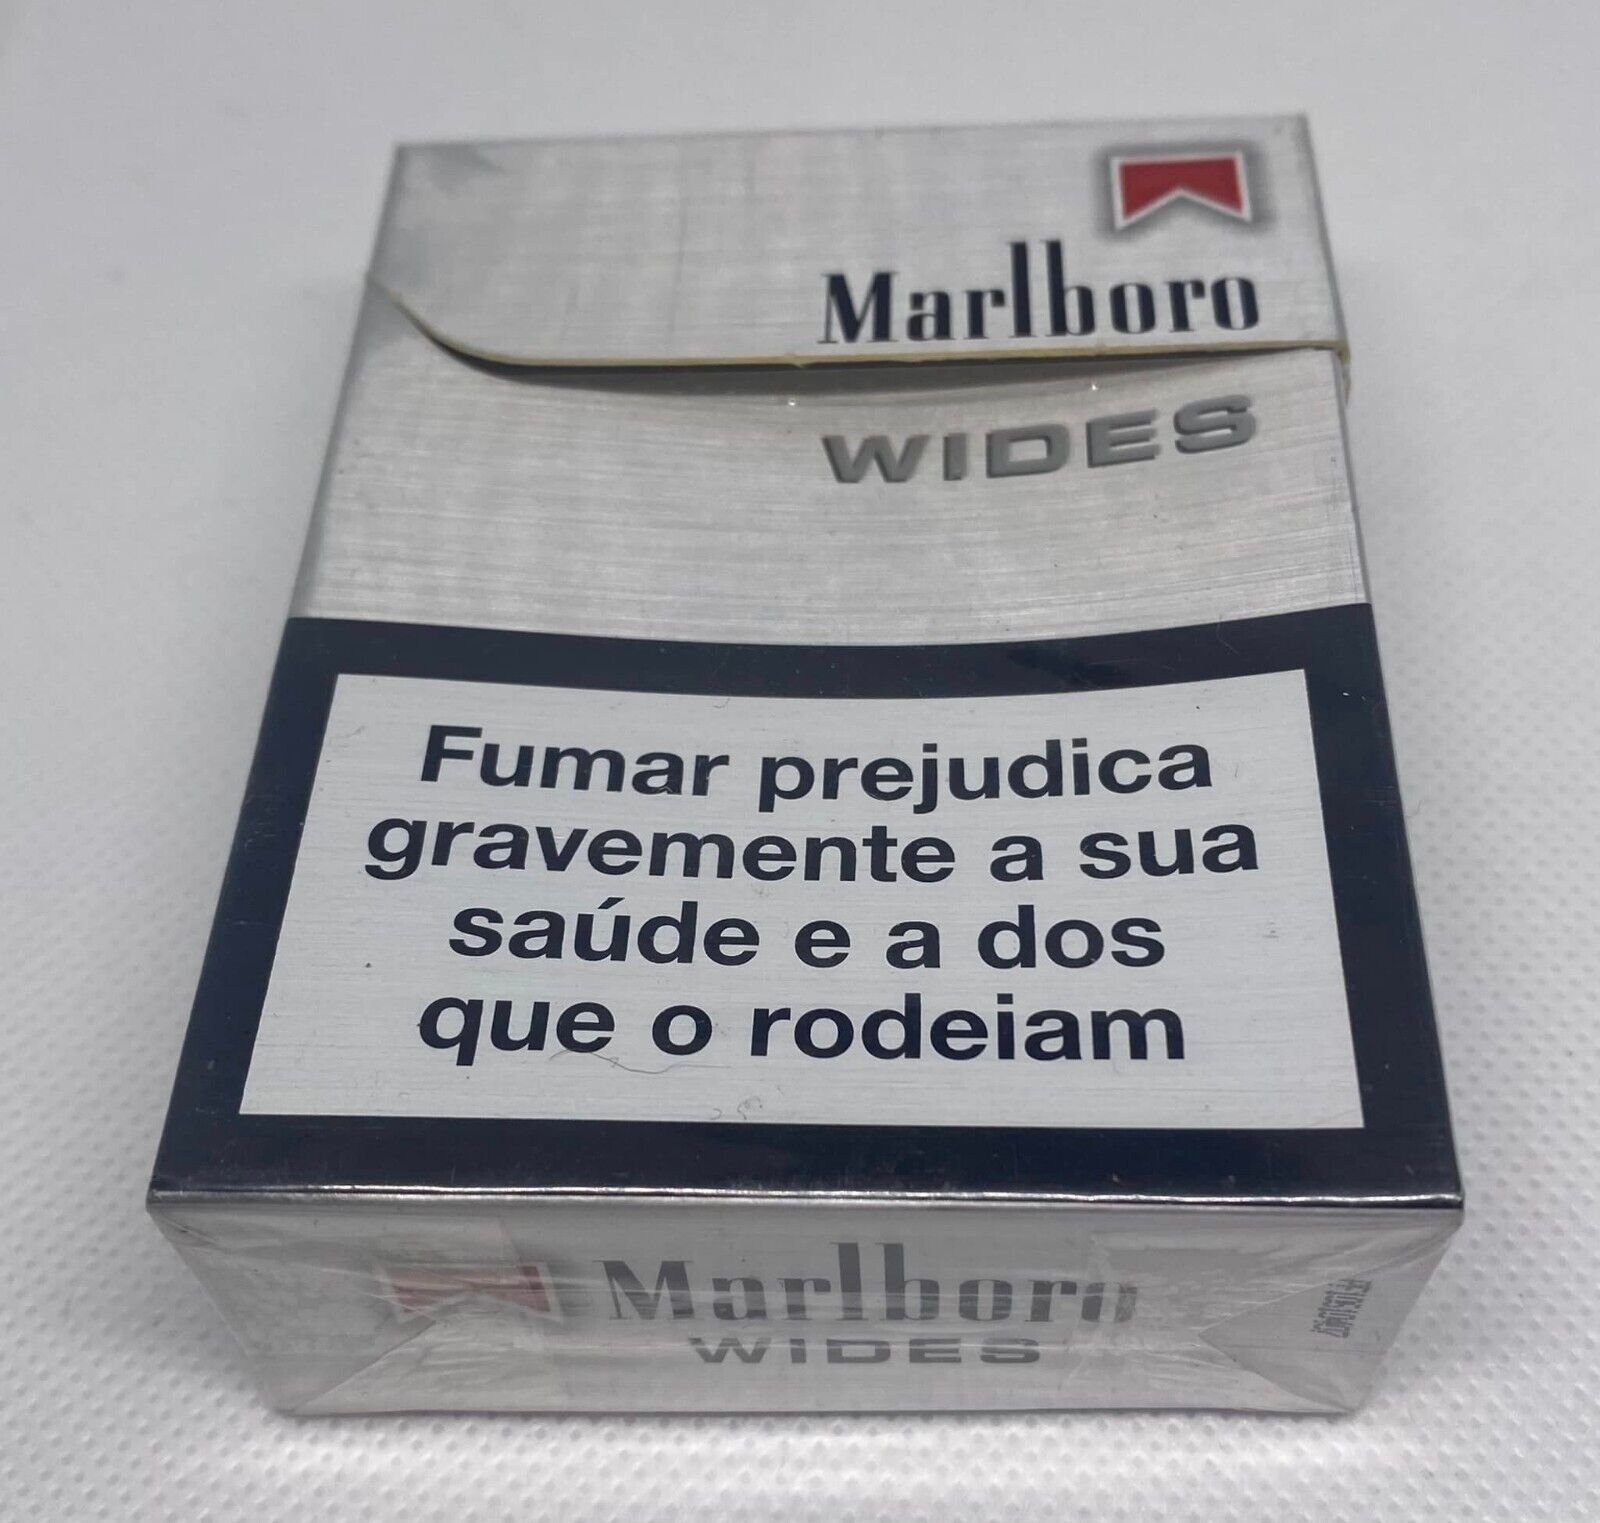 Vintage Marlboro Wides Cigarette Cigarettes Paper Box Empty Cigarette